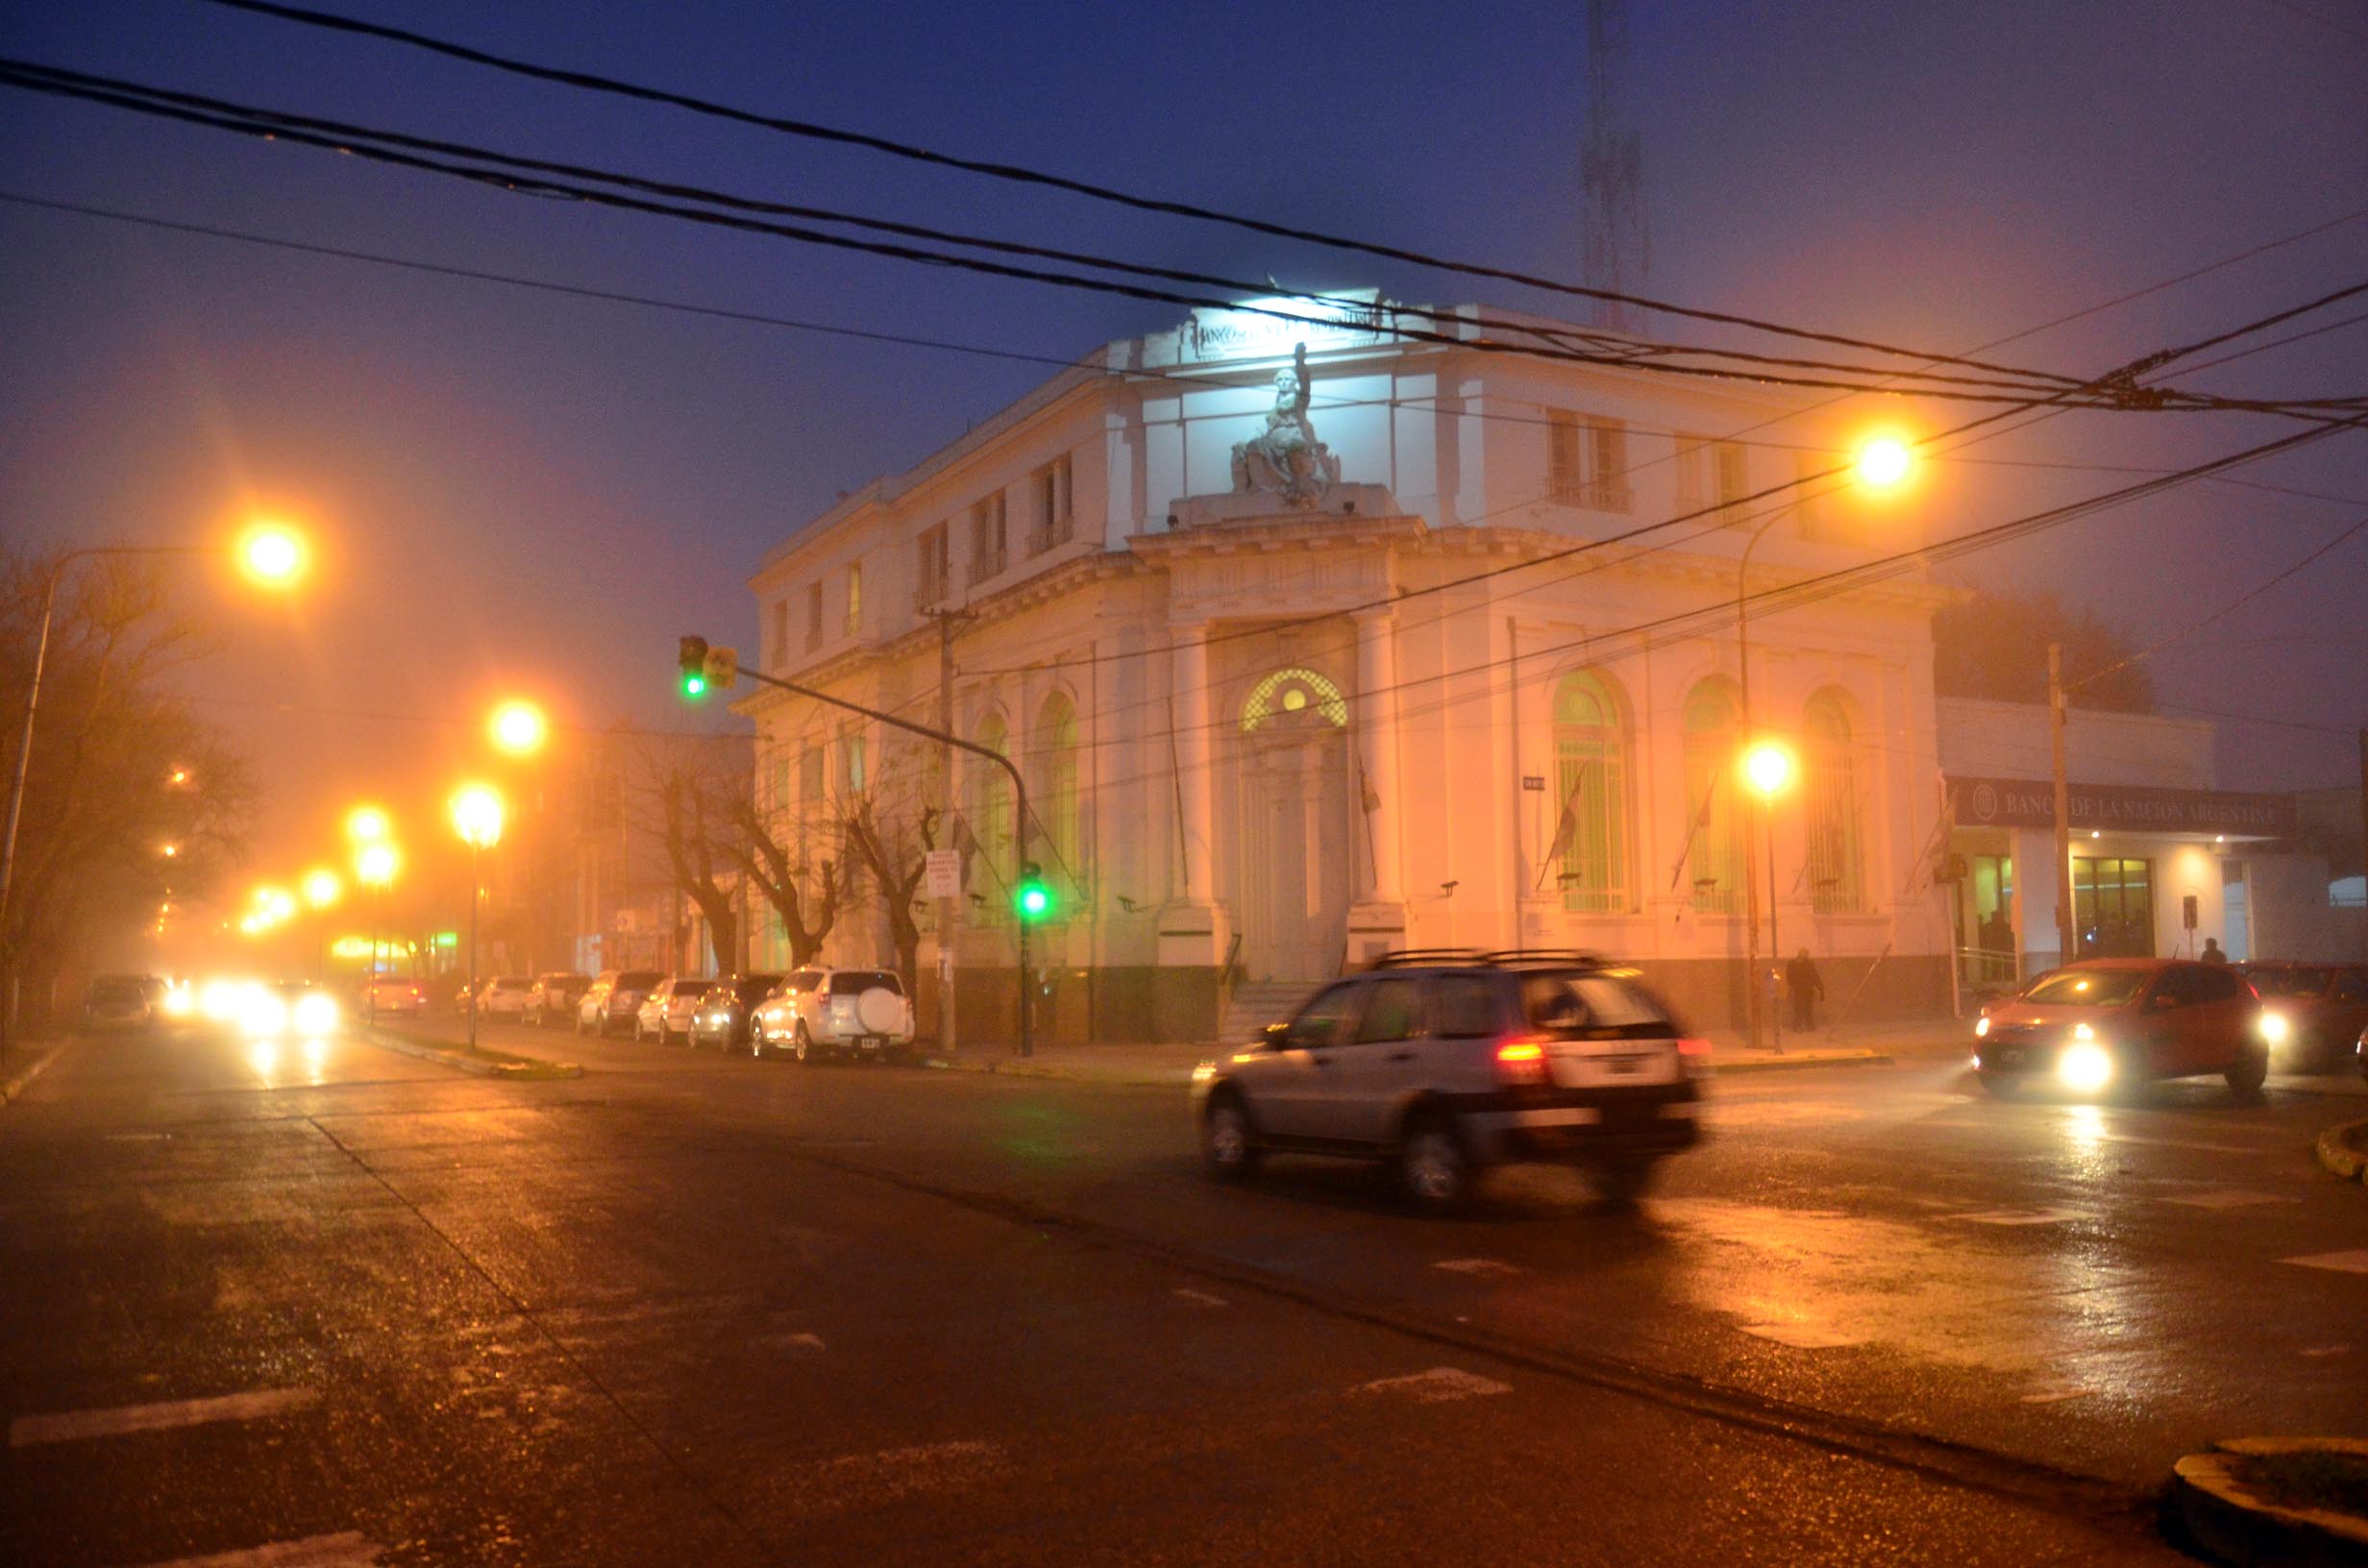 La Comarca amaneció con una densa niebla.
Foto: Marcelo Ochoa